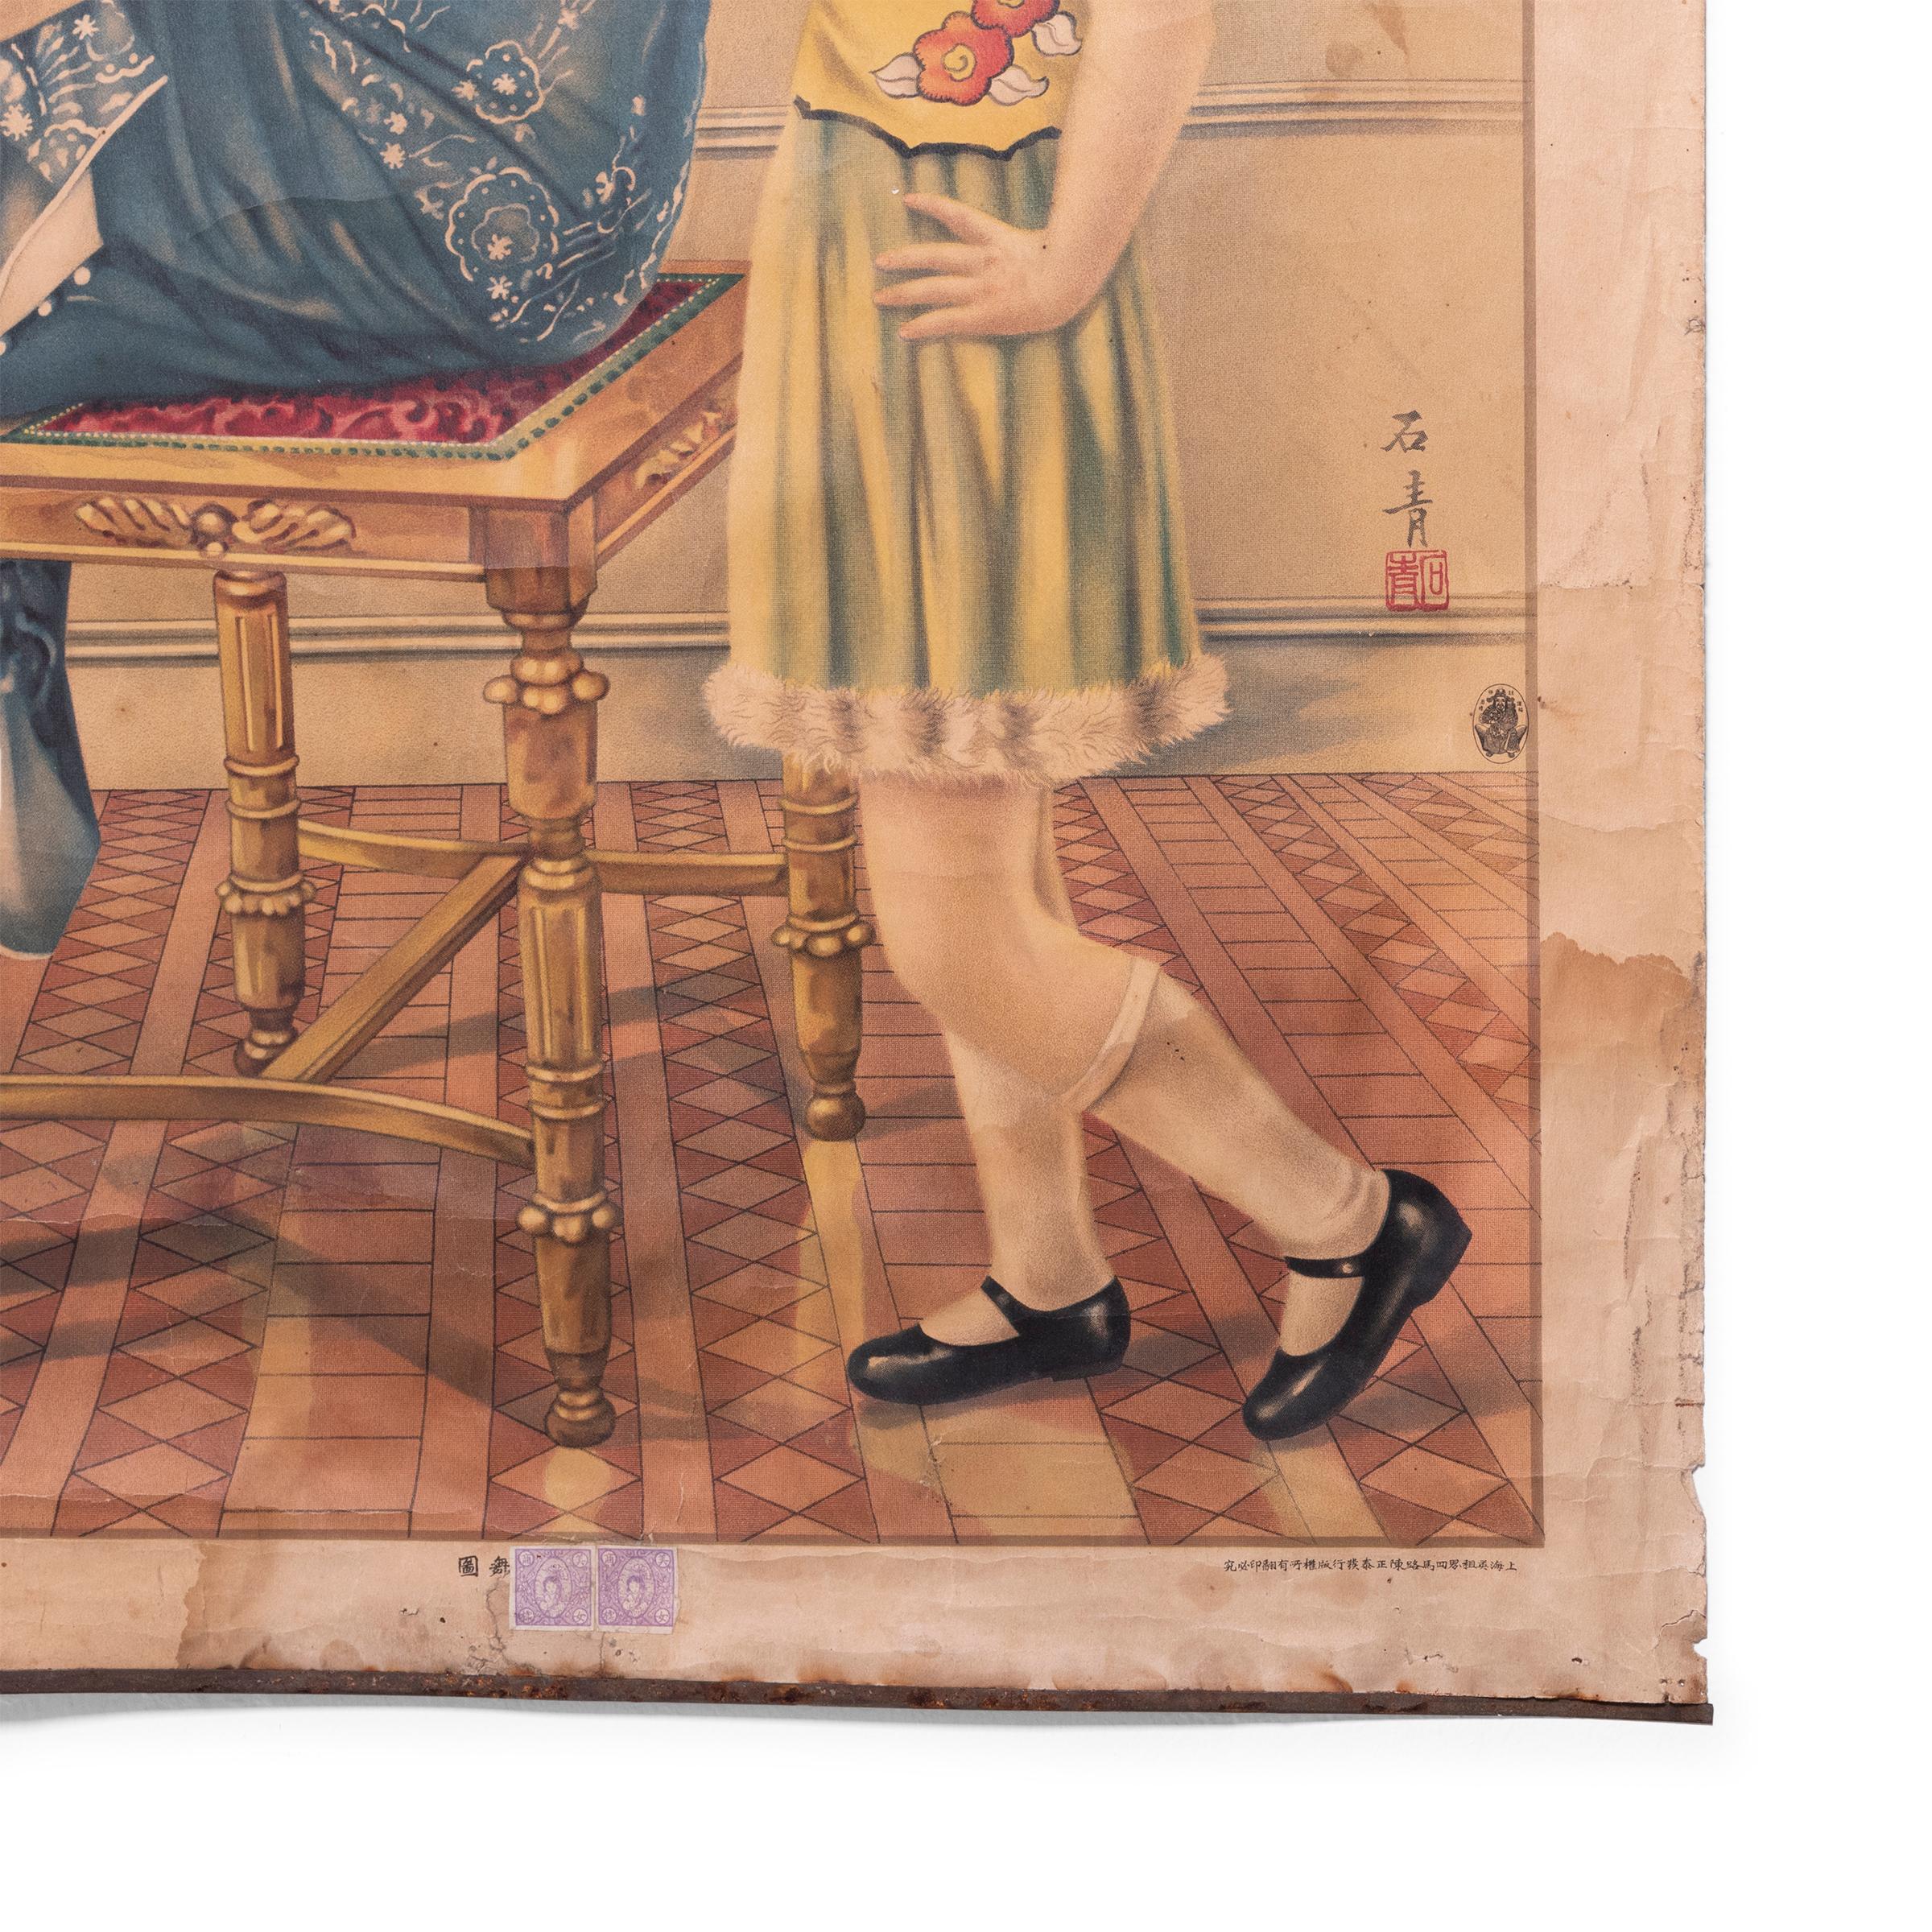 Dieses Plakat aus den 1920er Jahren verbindet die Detailgenauigkeit der traditionellen chinesischen Malerei mit dem Handwerk der Farblithografie. Das Plakat zeigt zwei junge Mädchen, die sich um einen verzierten Hocker versammelt haben, gekleidet in